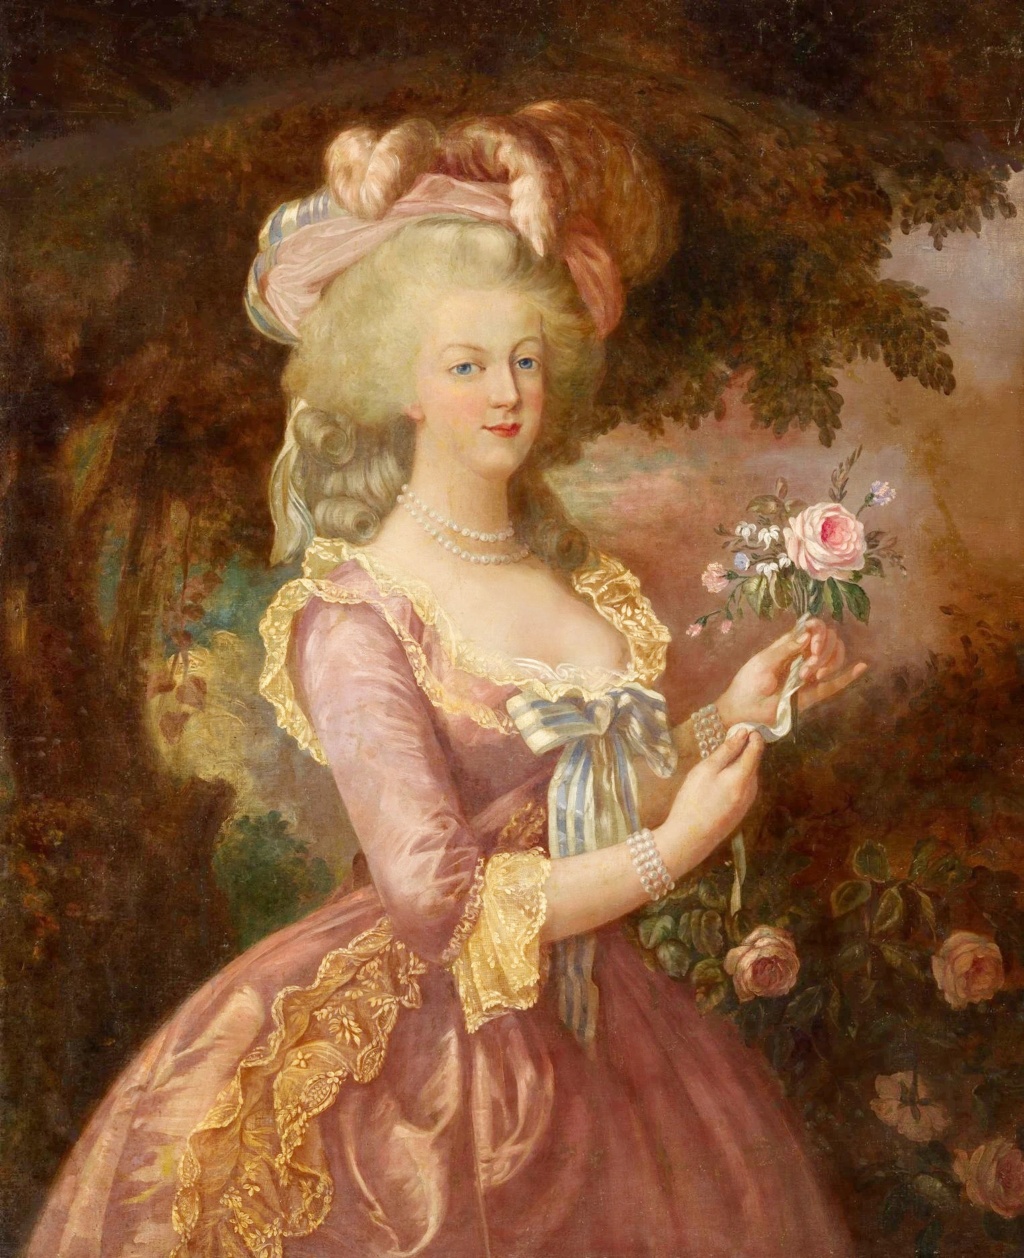 Portraits de Marie-Antoinette d'après Elisabeth Vigée Le Bun ?  - Page 2 Poij11